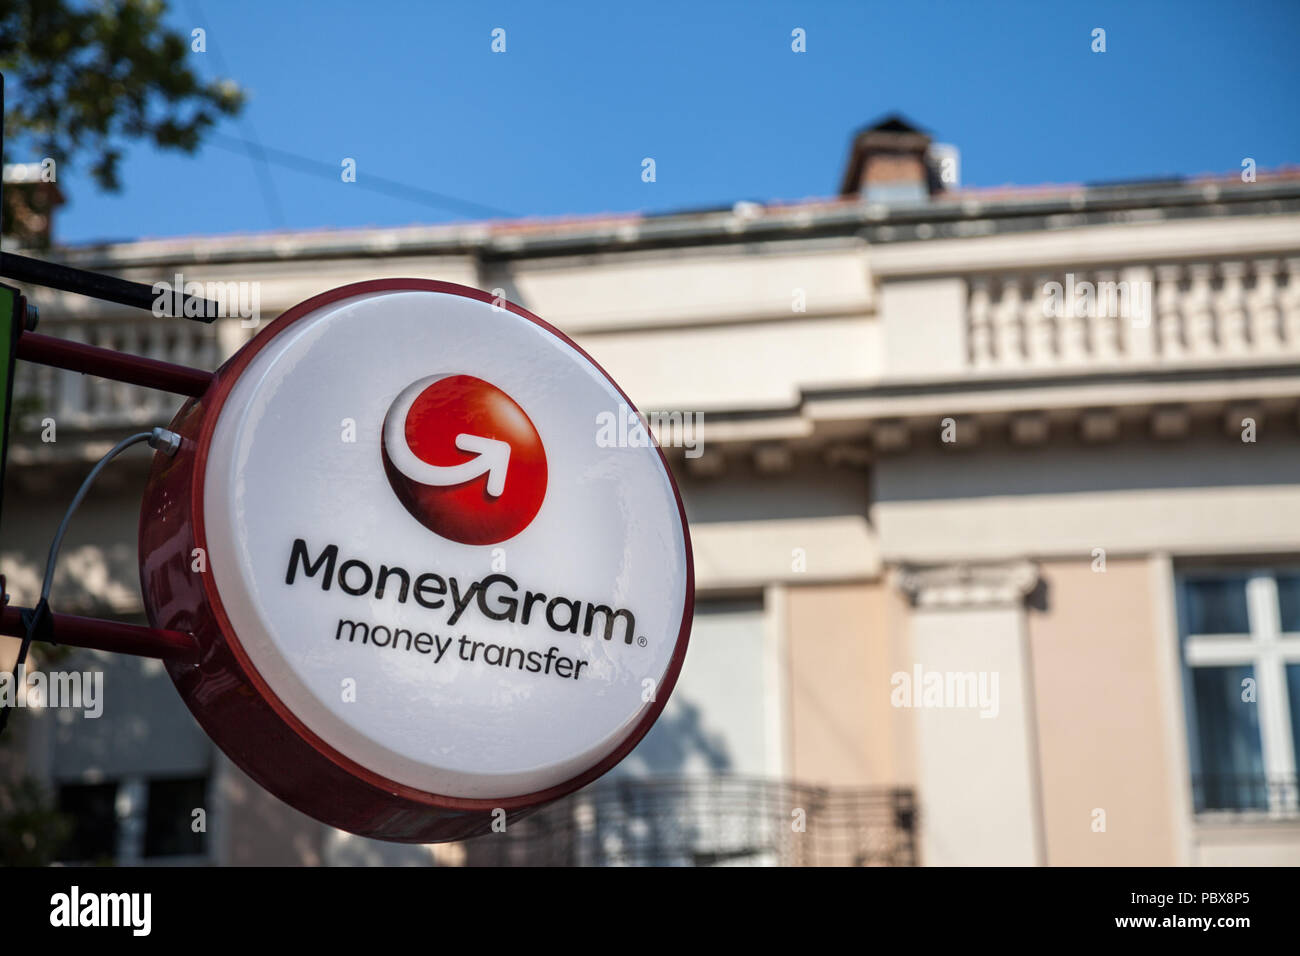 Belgrado, Serbia - Luglio 11, 2018: Moneygram logo sul loro principale ufficio di scambio per Belgrado. Moneygram è un americano di società di servizi finanziari speci Foto Stock